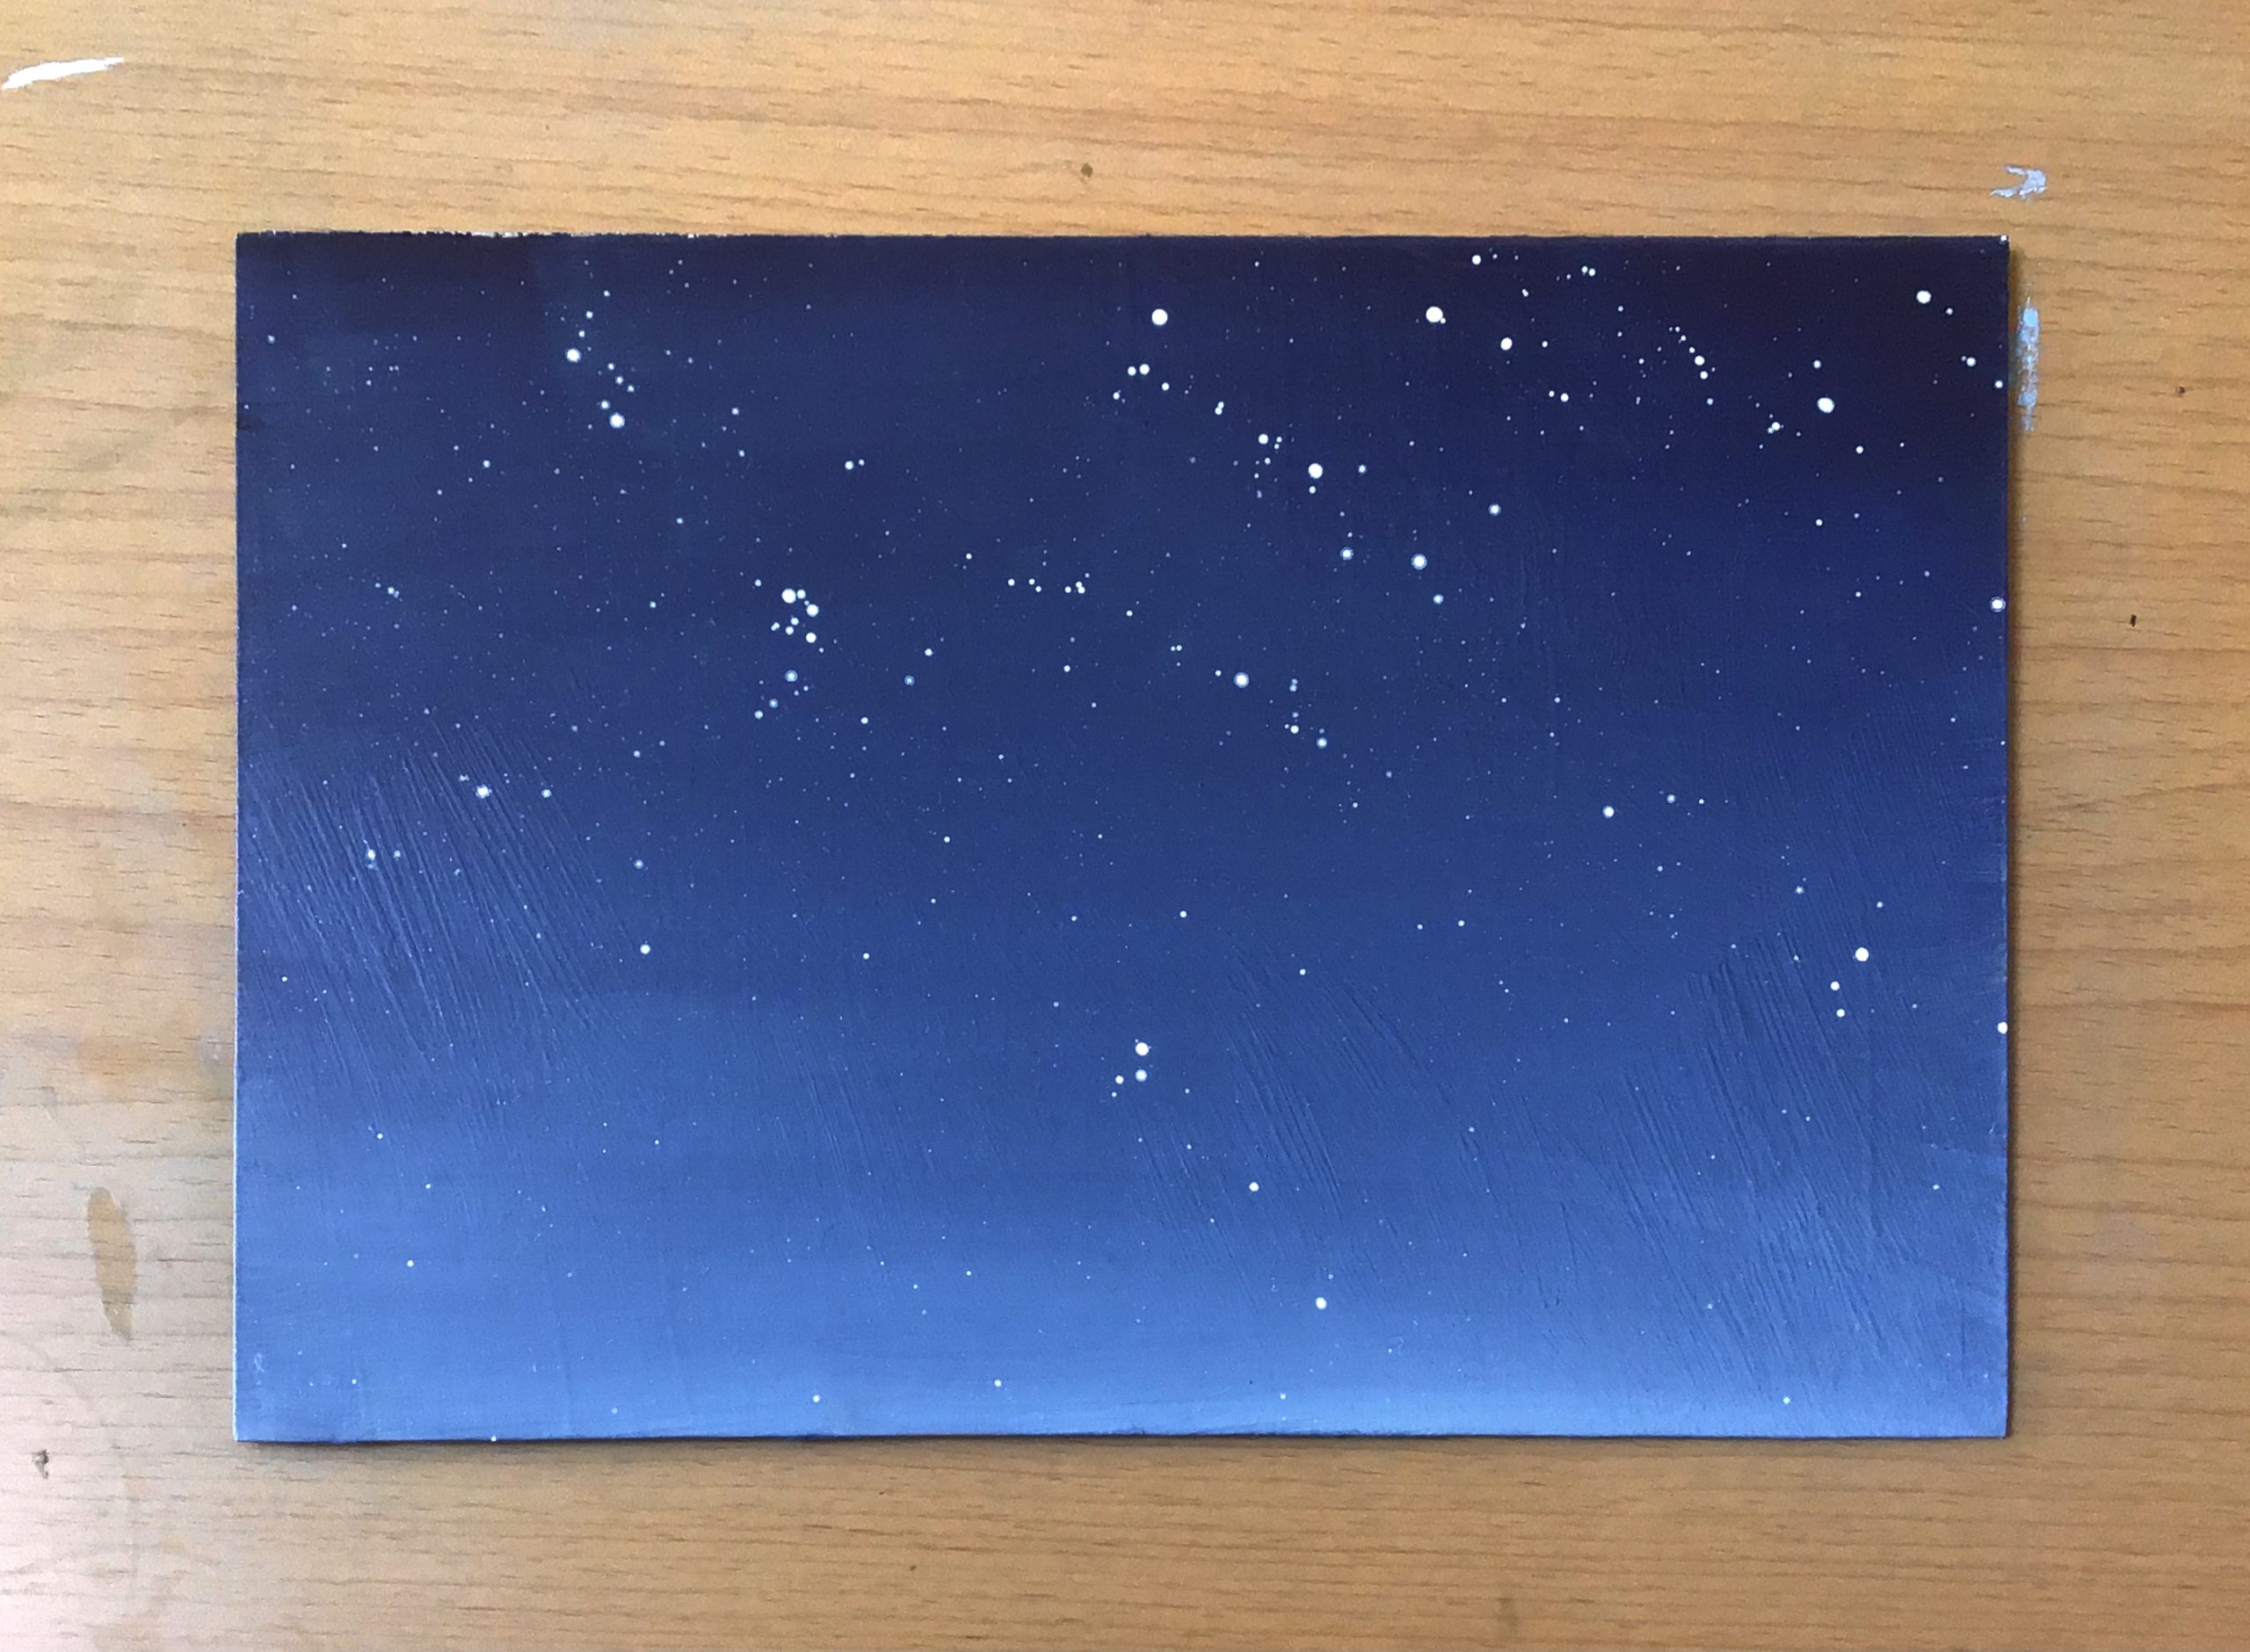 油絵できらめく星空を描こう 分かりやすく手順を解説 Akira Kusaka Studio